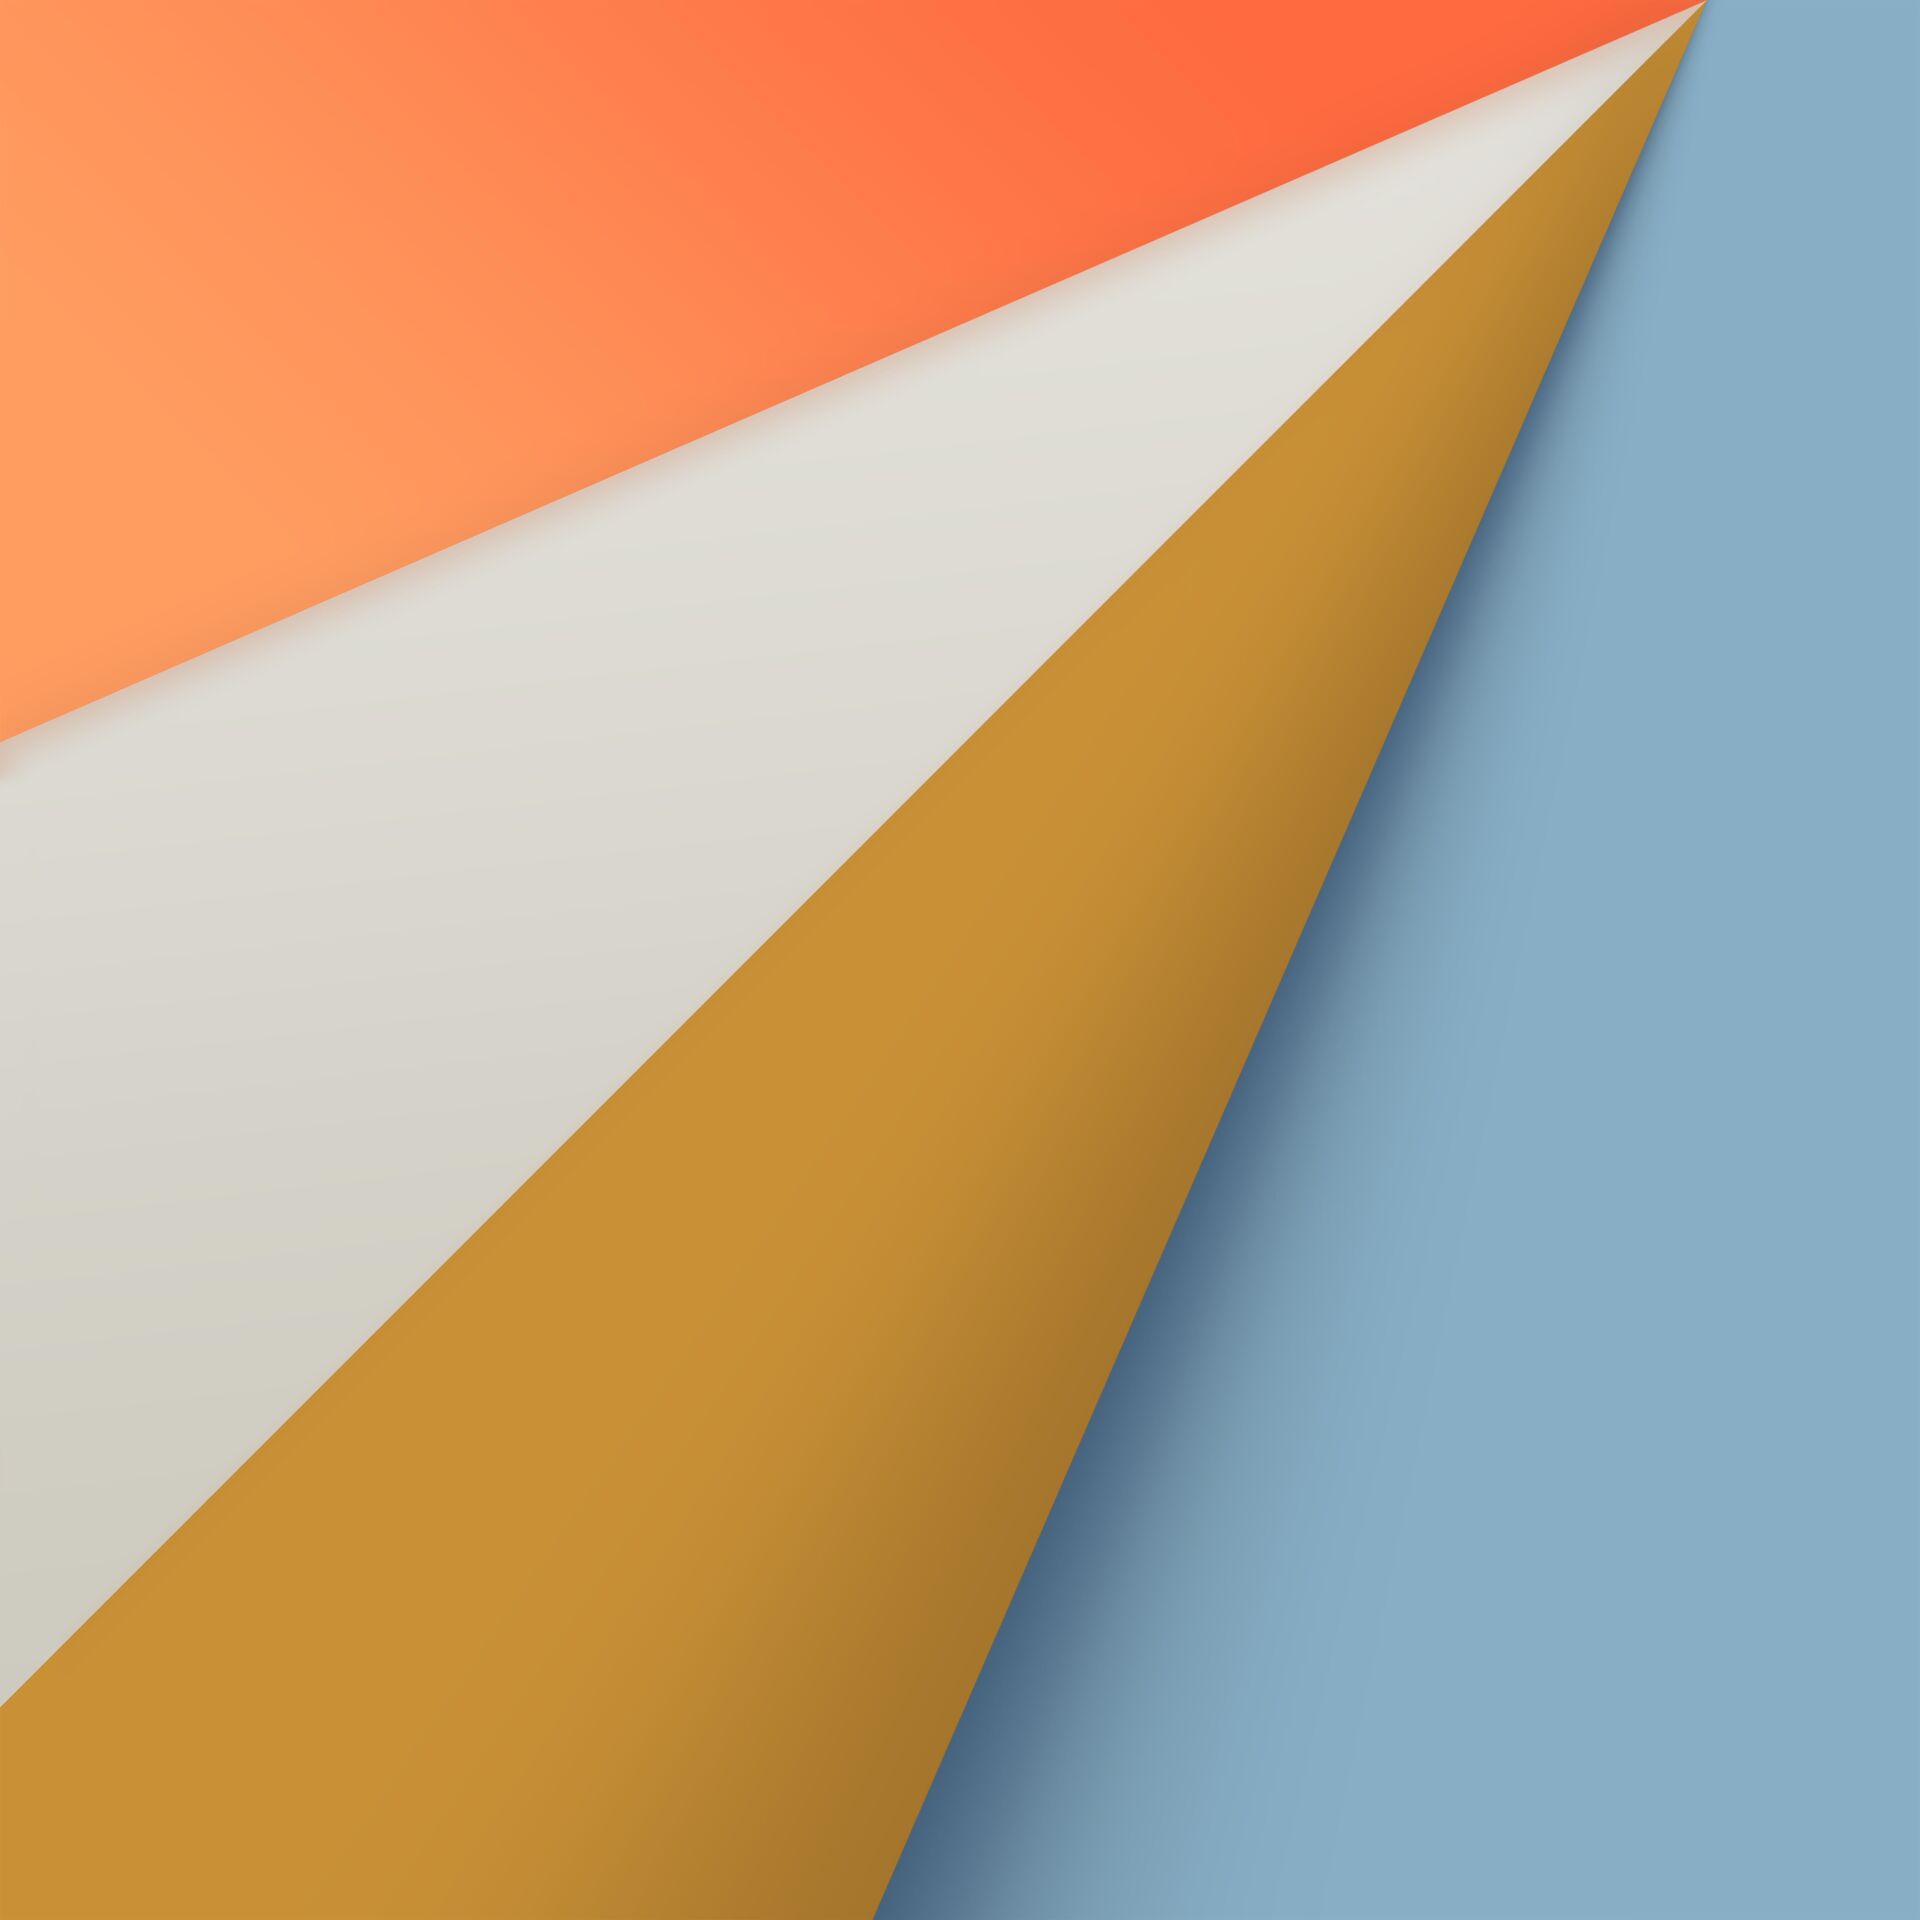 Descargar Safari Wallpapers para iPhone, iPad y Mac